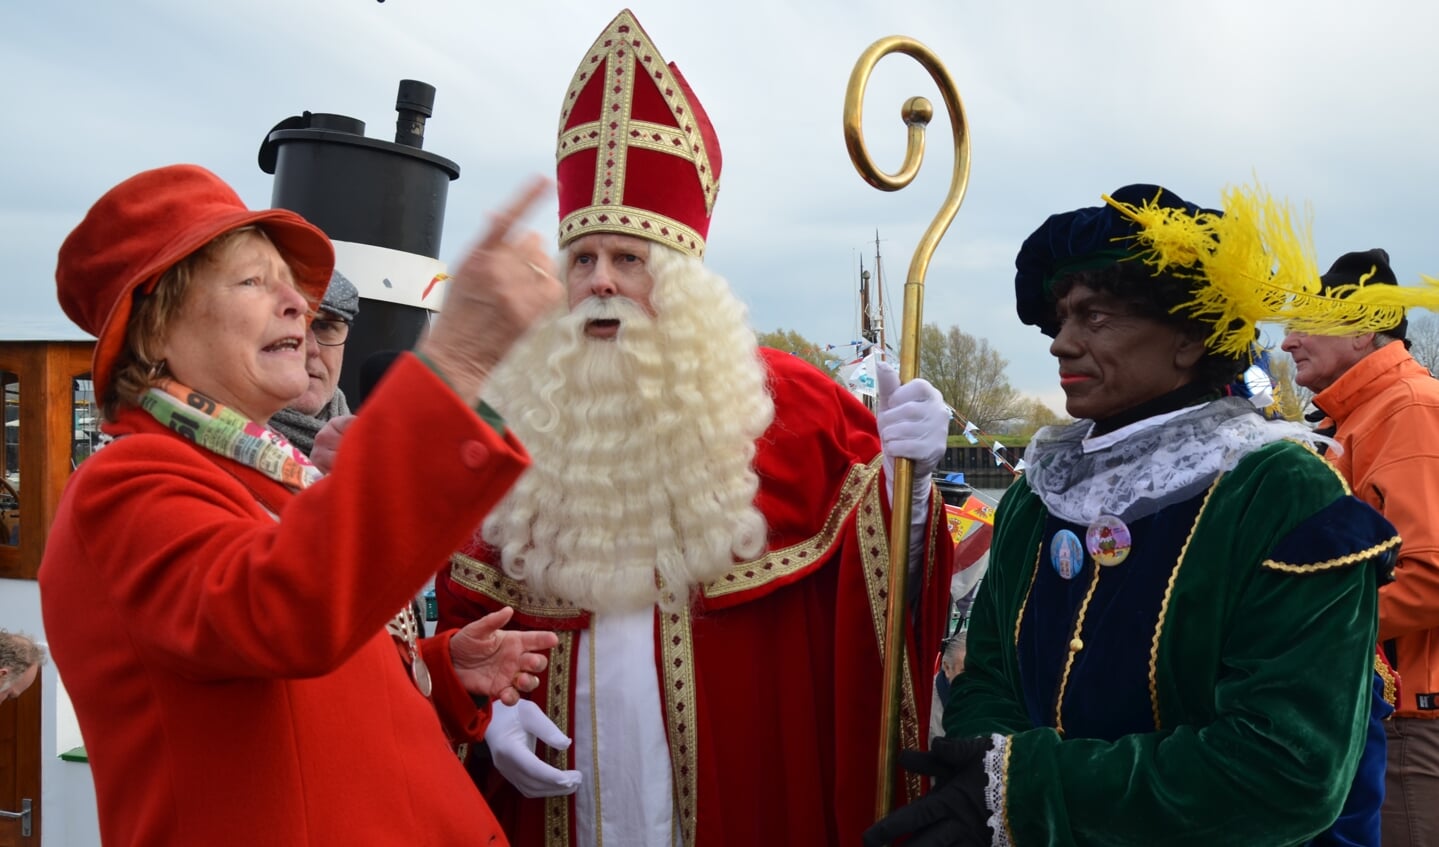 DE burgemeester ontvangt Sinterklaas in de haven